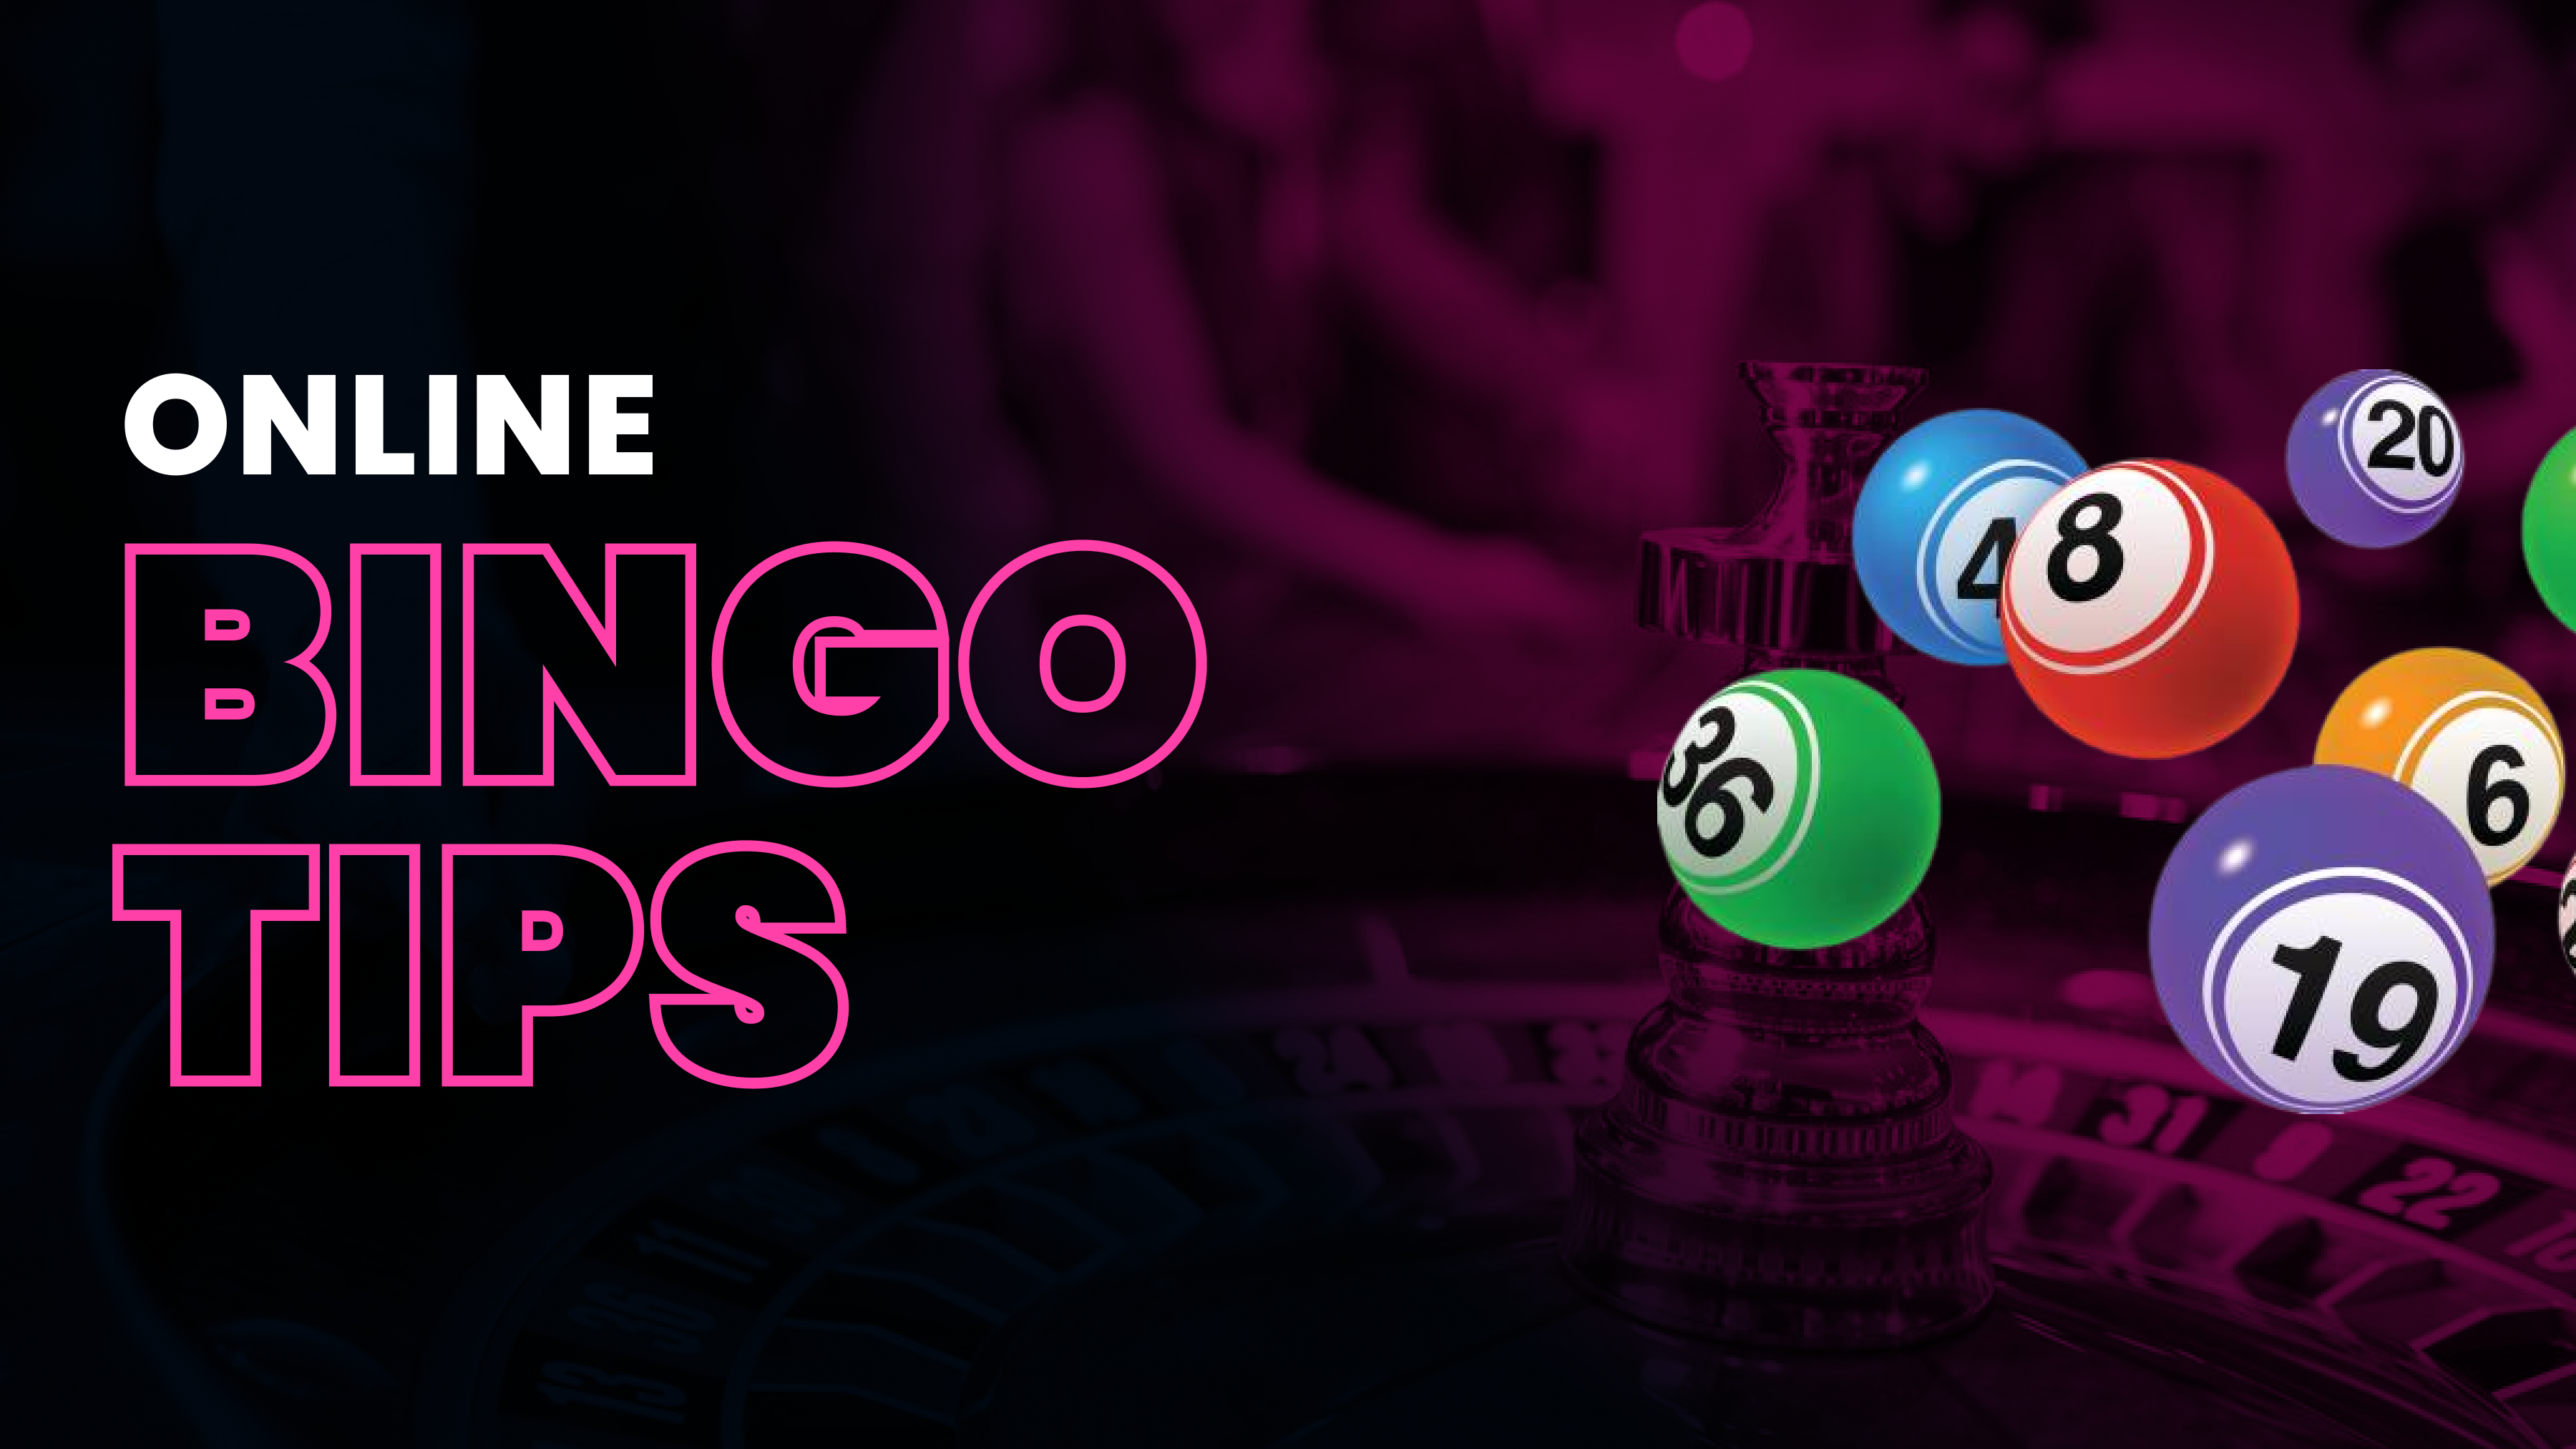 Online Bingo Tips Header Image